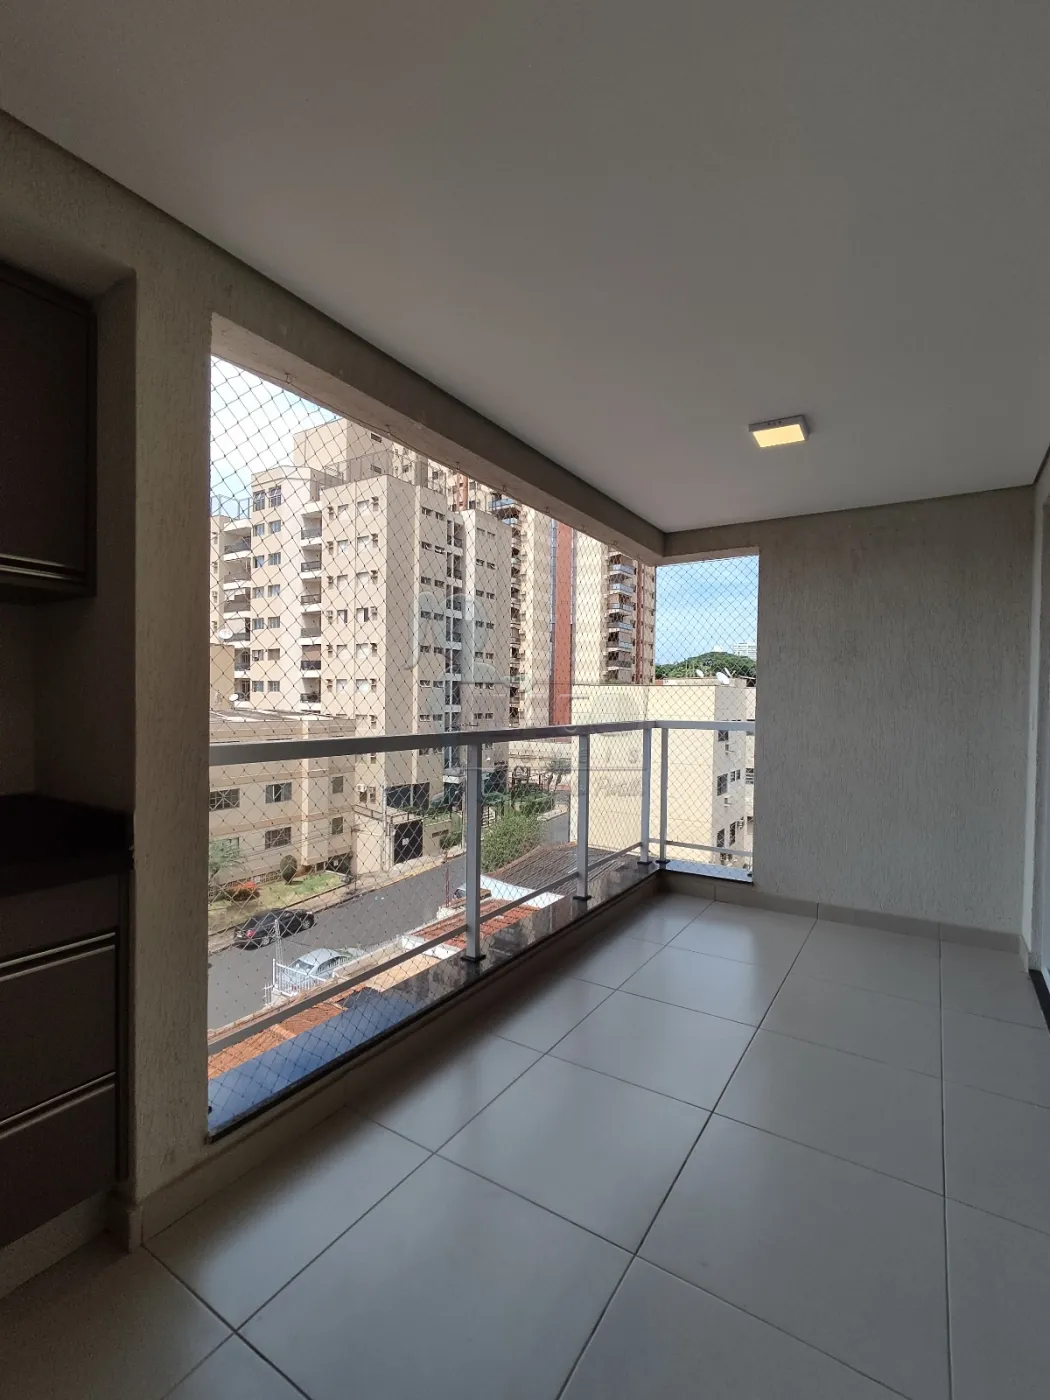 Alugar Apartamentos / Padrão em Ribeirão Preto R$ 1.800,00 - Foto 12